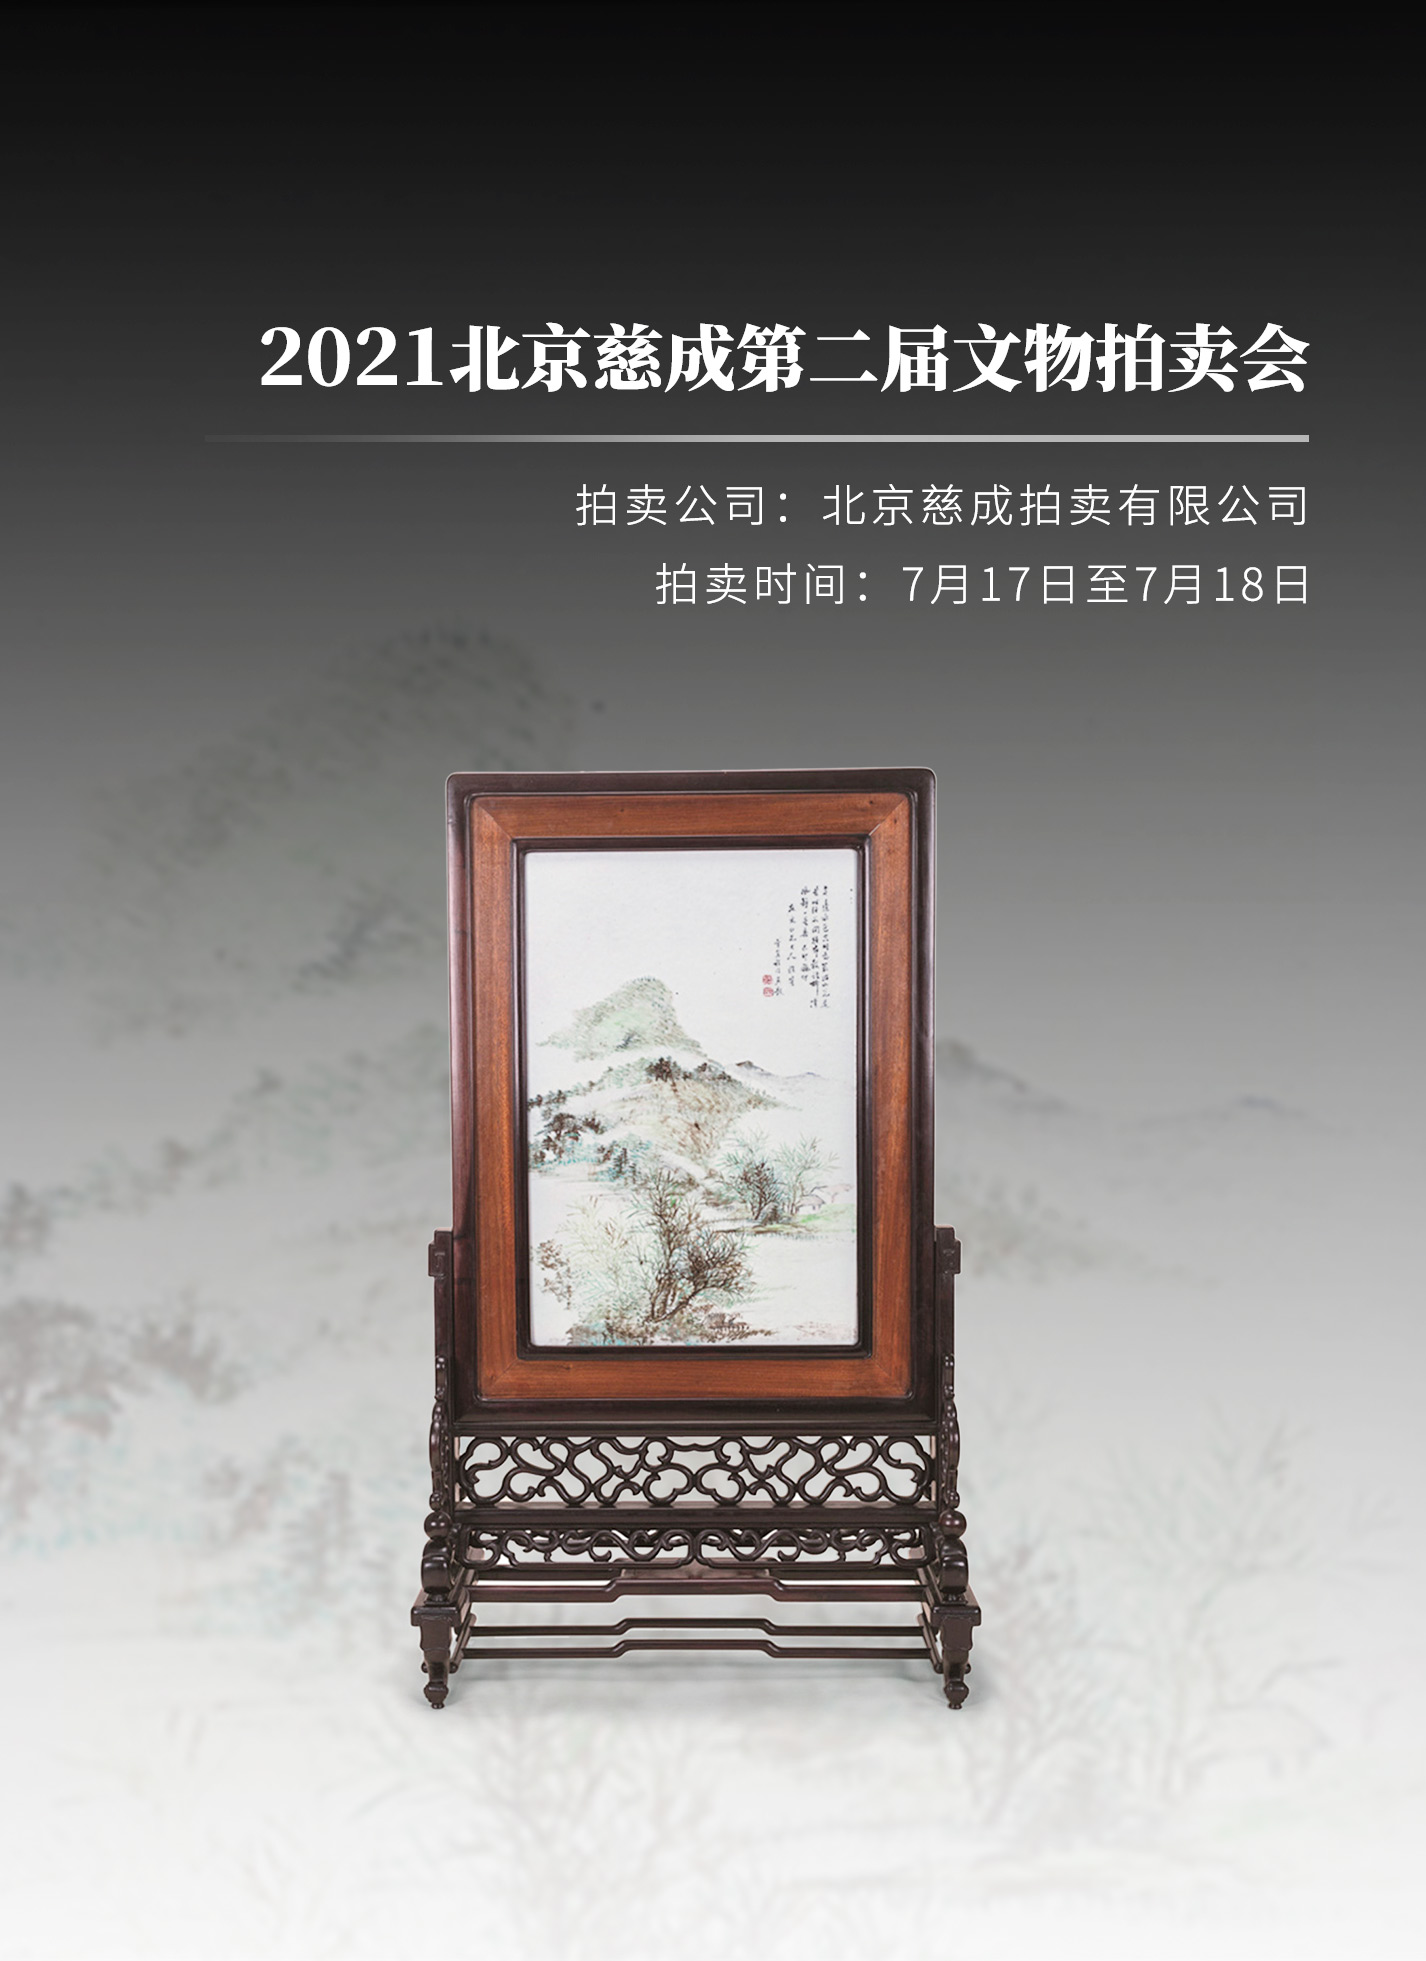 从御窑佳瓷到文人雅器，北京慈成第二届文物拍卖会掇英.联拍动态